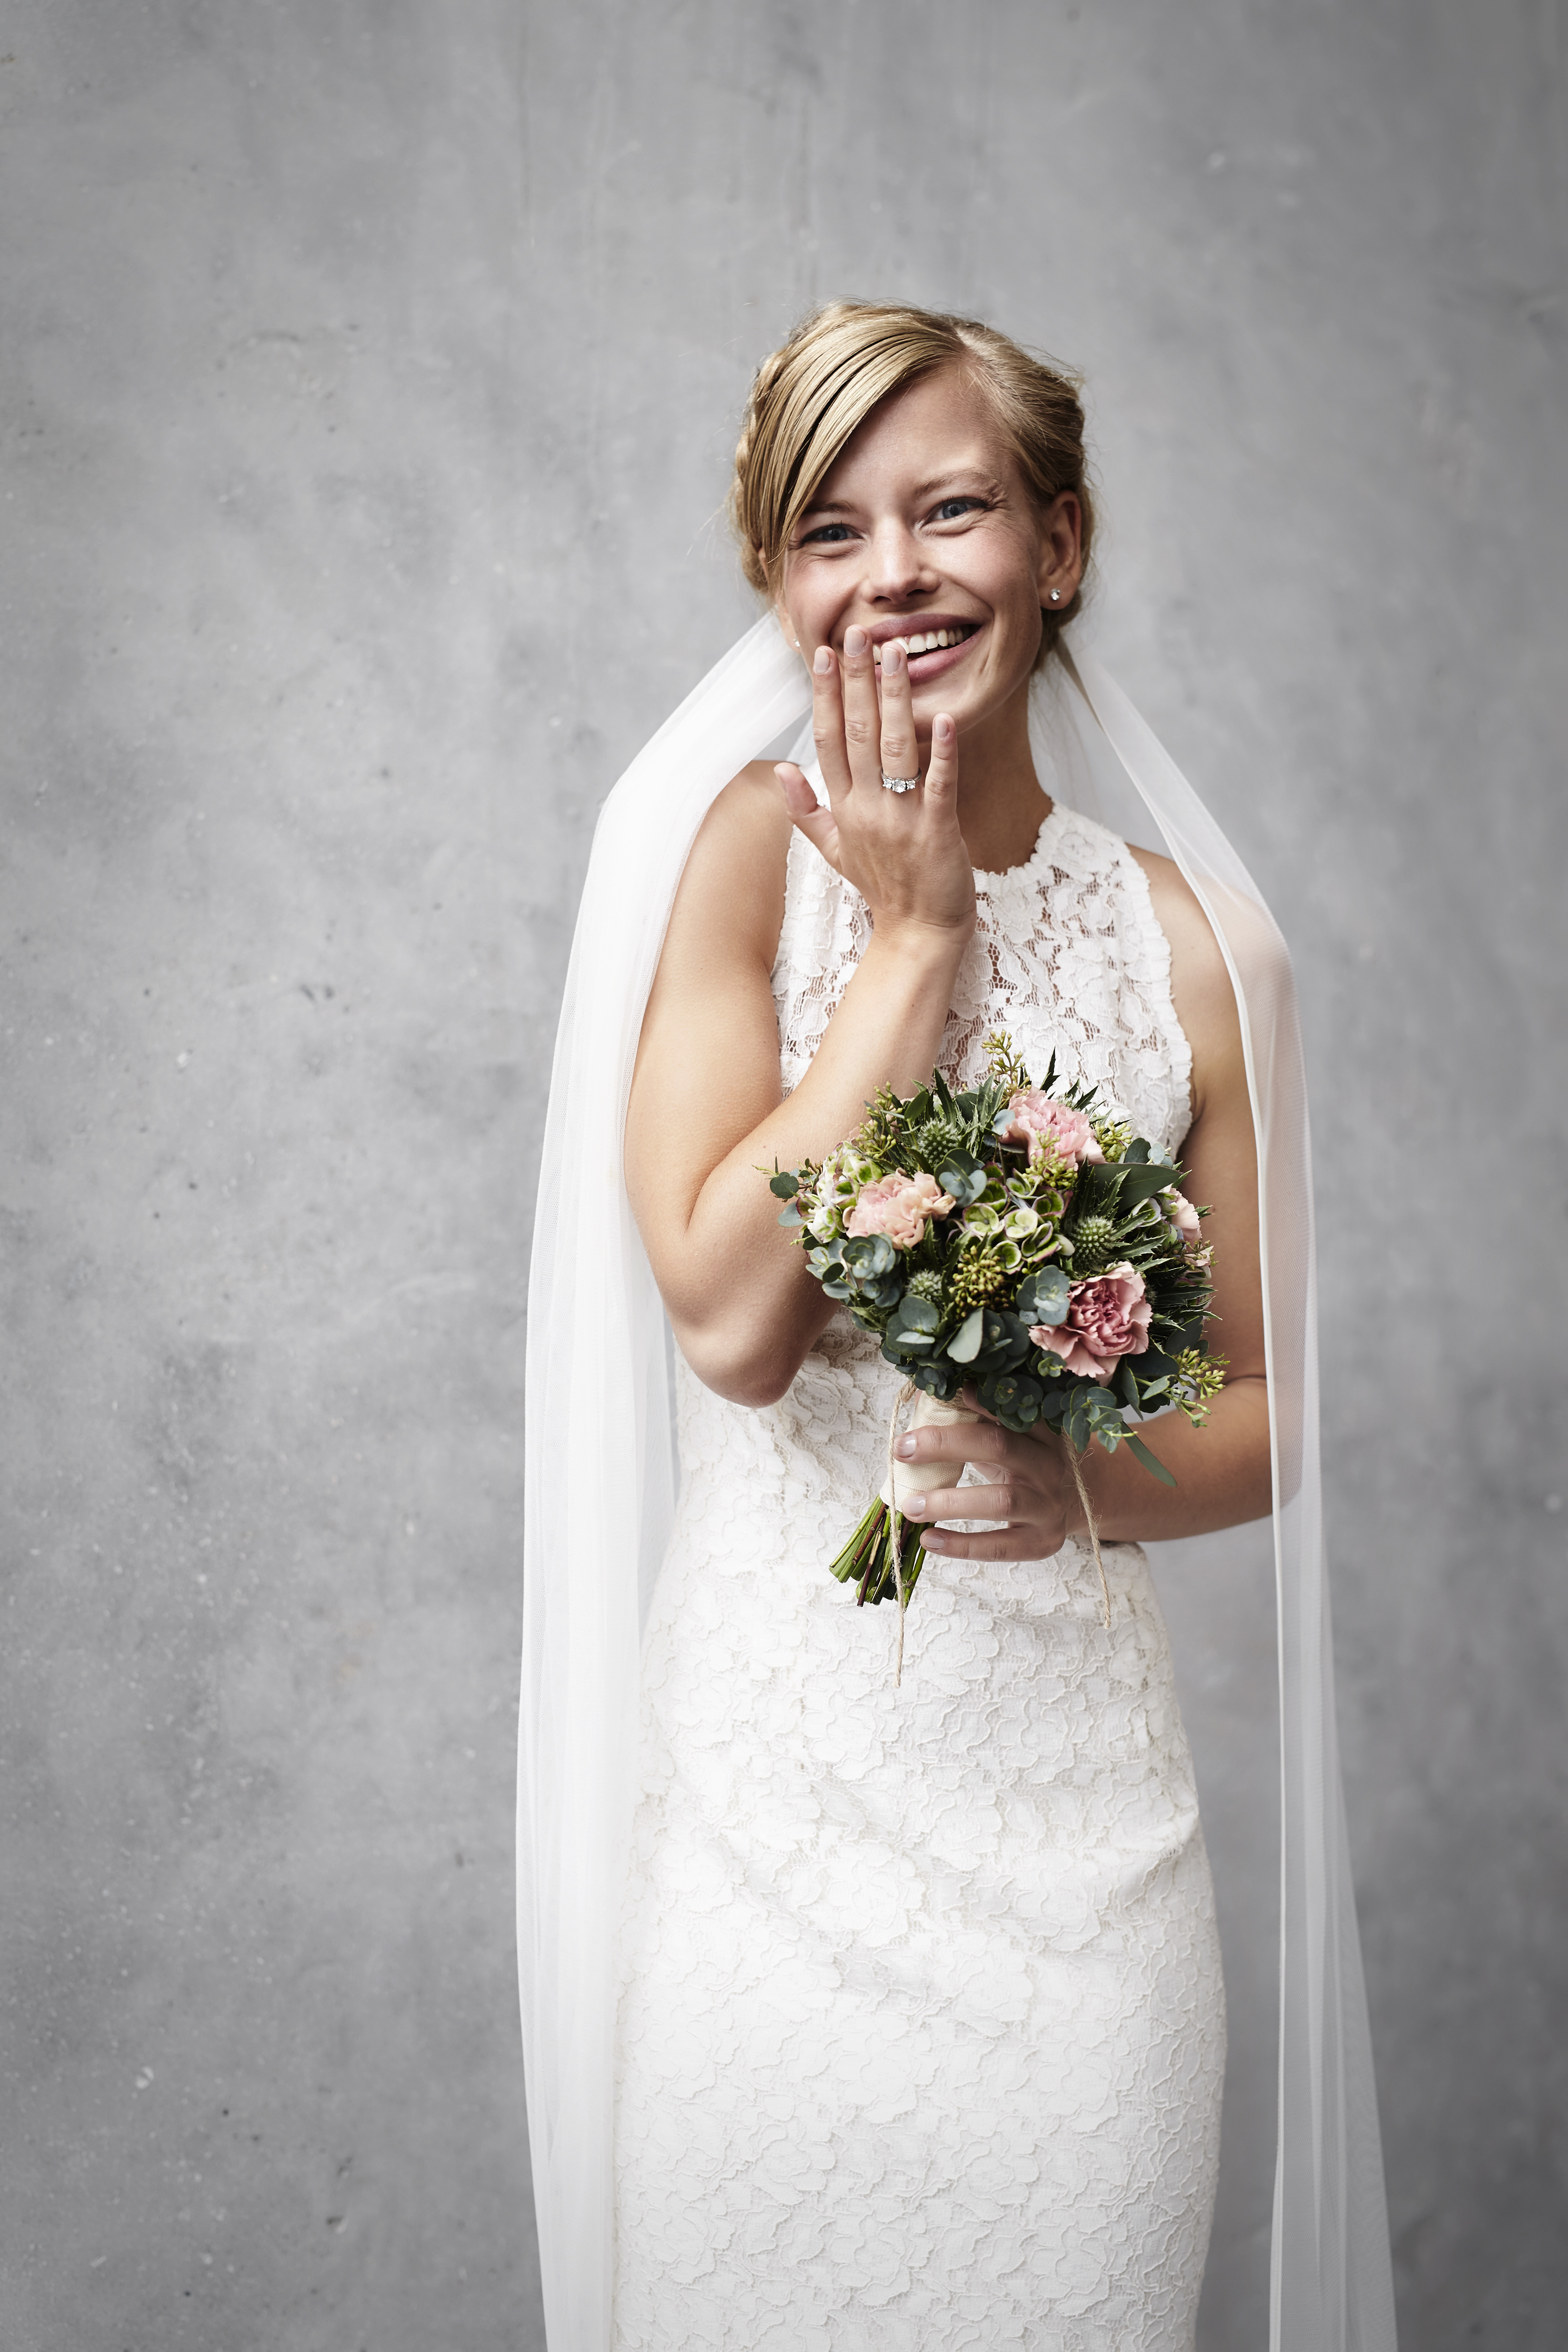 Une mariée gloussant en tenant son bouquet | Source : Shutterstock